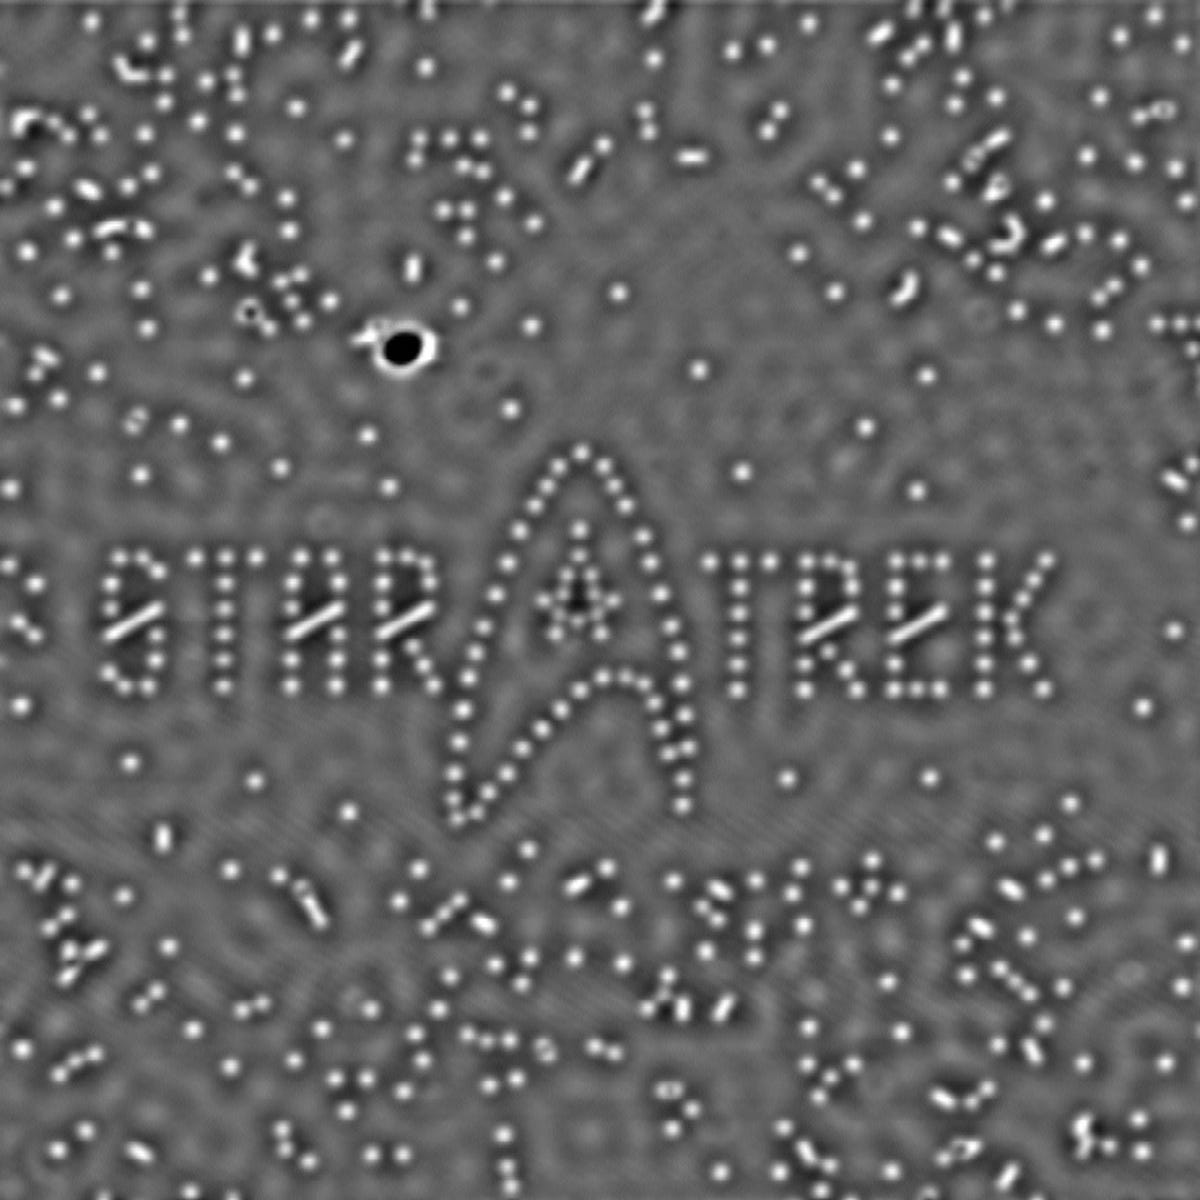 Star_Trek.jpg